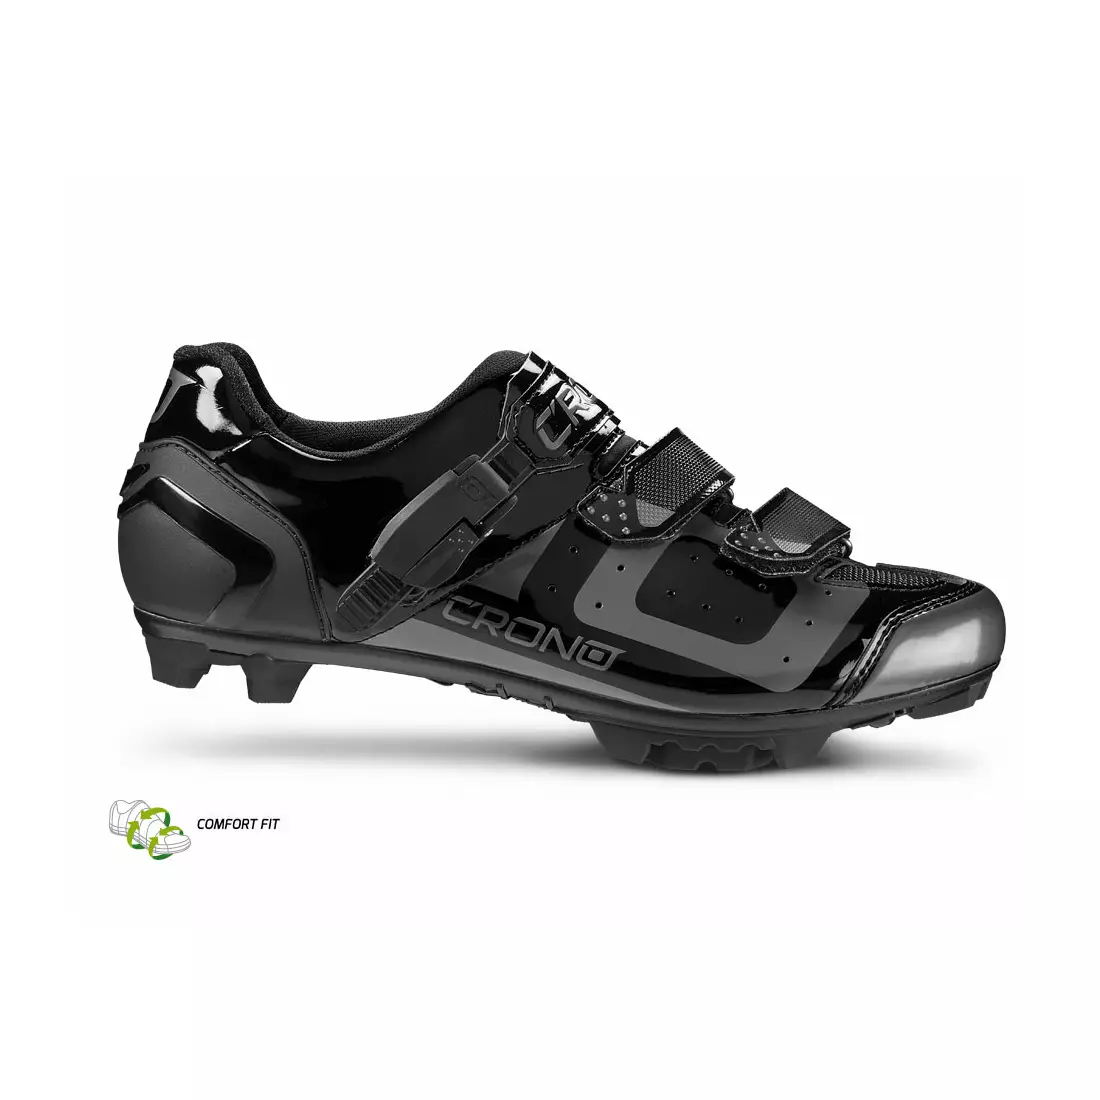 CRONO CX3 nylon - MTB cyklistická obuv, čierno